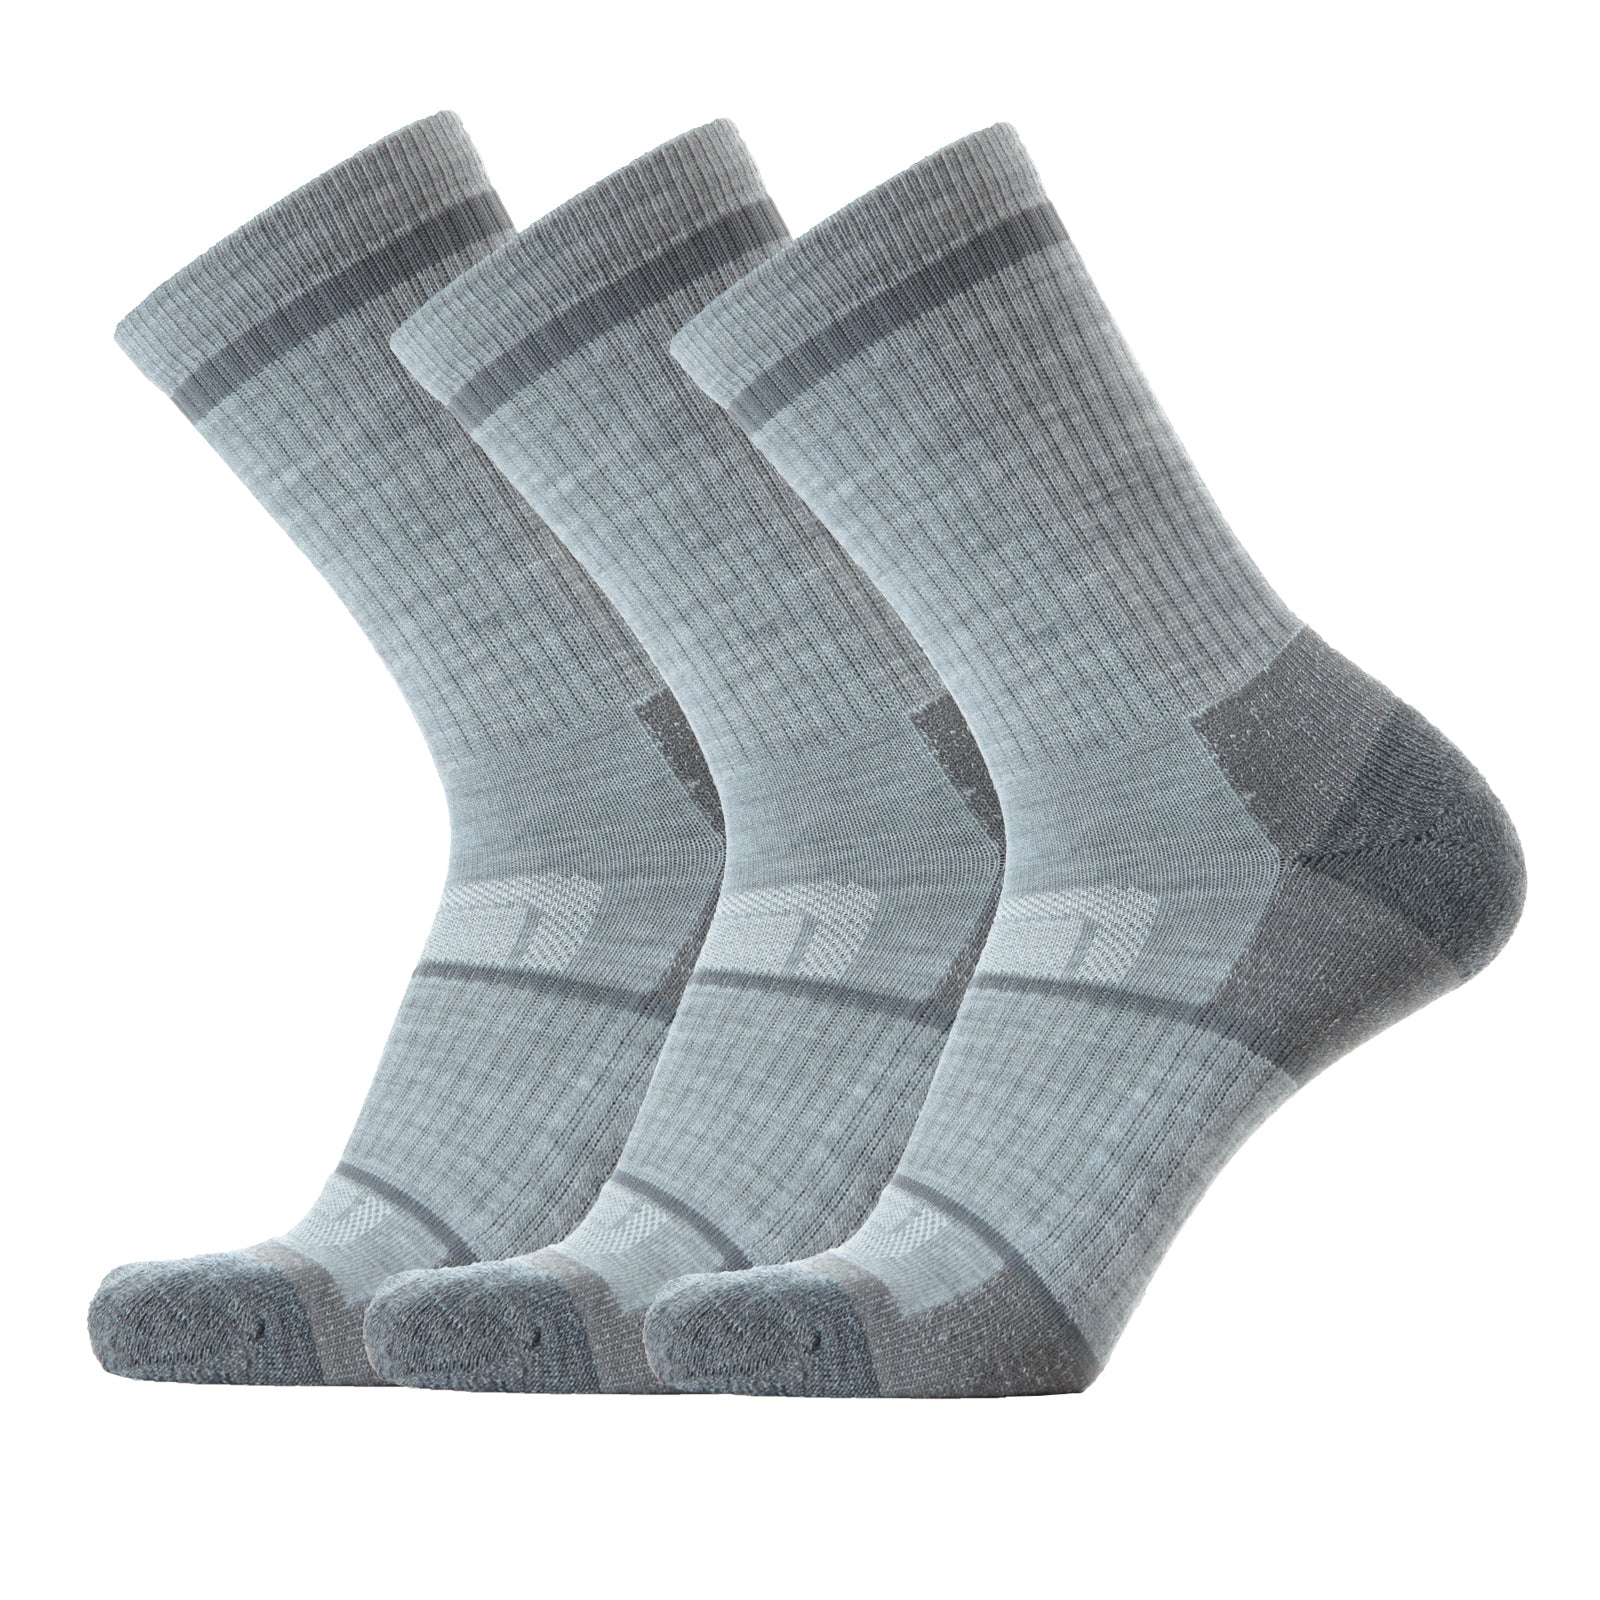 SOLAX 3 pairs Man's Merino wool Crew socks